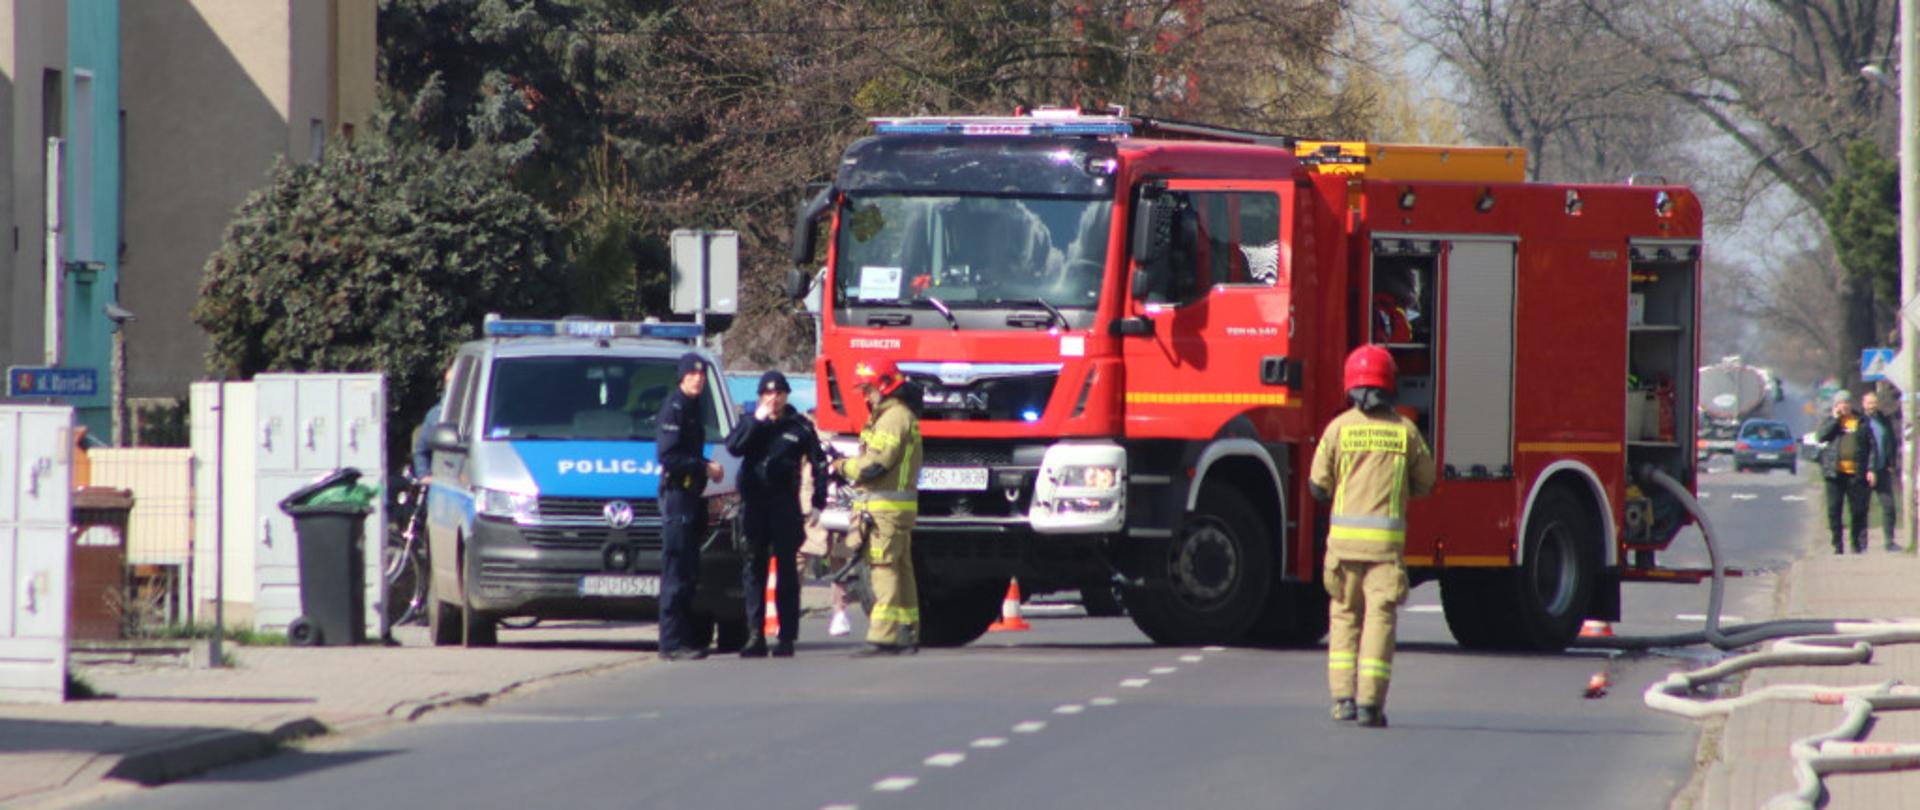 Zdjęcie przedstawia zastęp straży oraz Policje, stojące na drodze podczas działań związanych z gaszeniem pożaru butli z acetylenem.